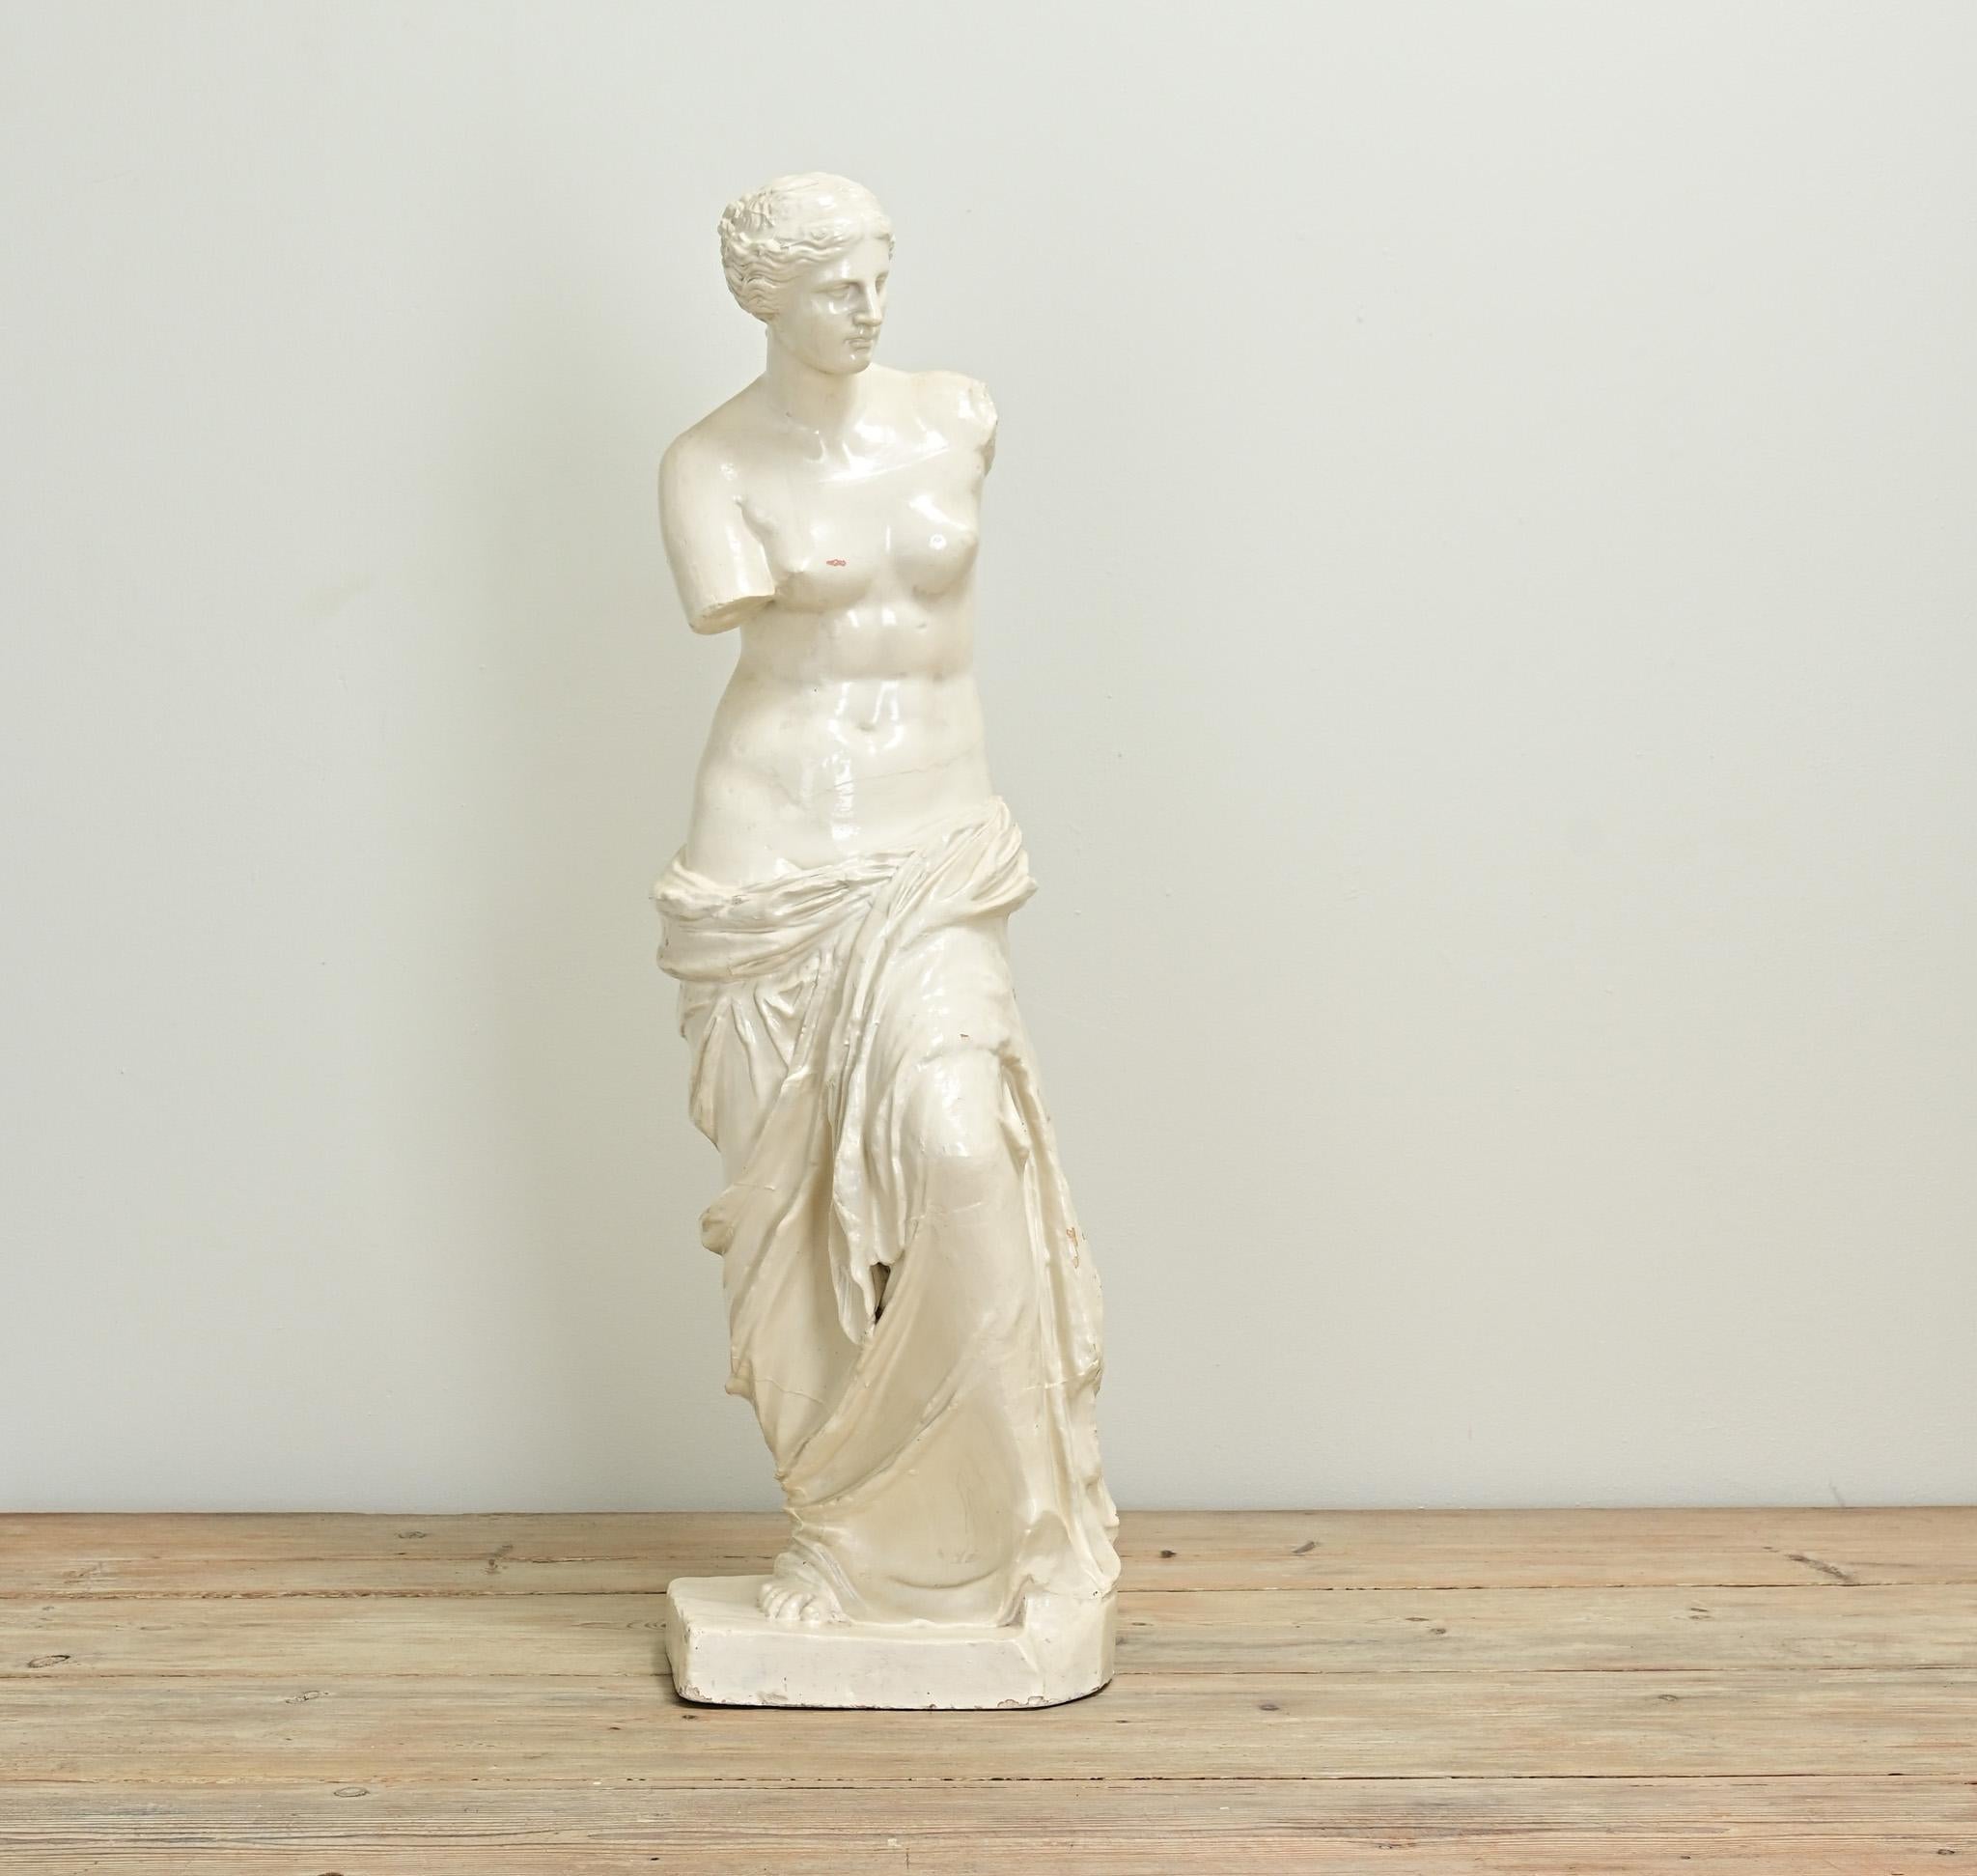 Diese zierliche Nachbildung der ikonischen Statue der Venus de Milo ist nur knapp einen Meter groß. Die Originalstatue wurde auf der Insel Milo gefunden und soll die griechische Göttin Aphrodite darstellen, die in der römischen Mythologie als Venus